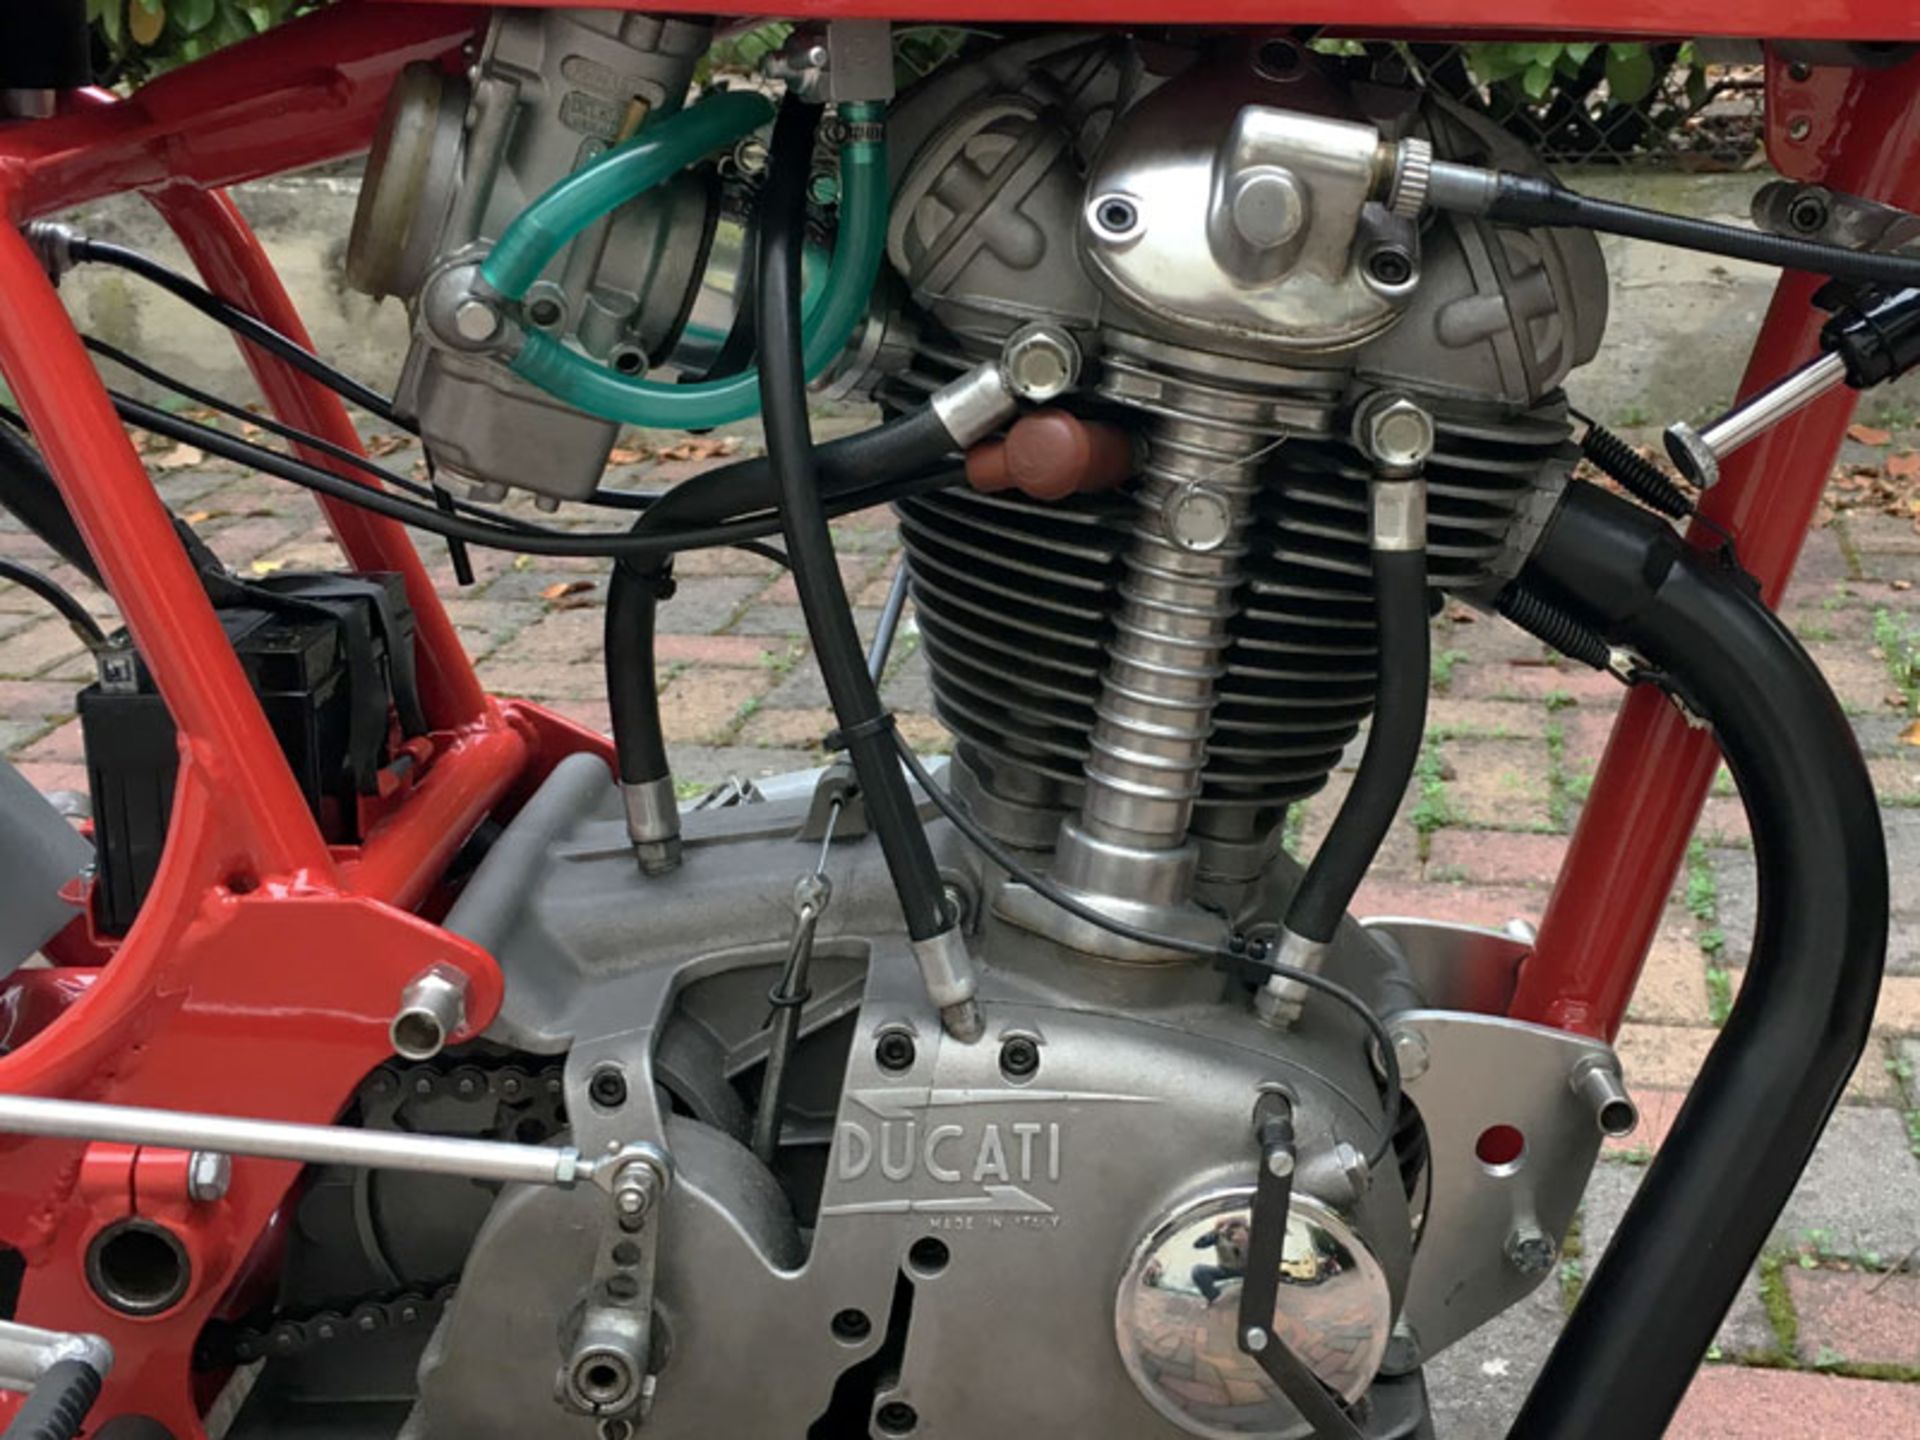 1968 Ducati Desmo - Image 3 of 5